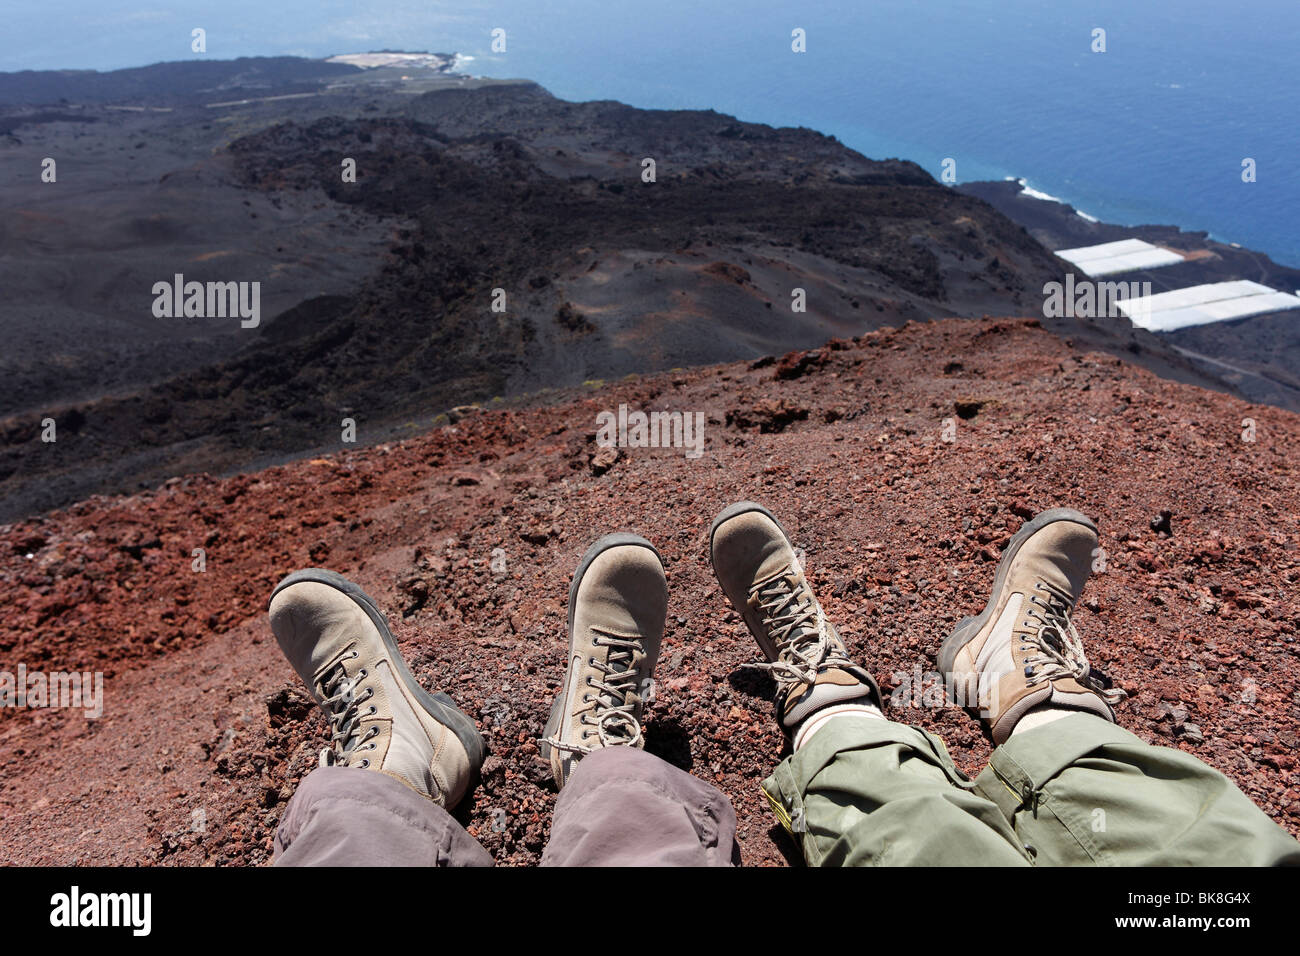 Piedi con scarponi da trekking, escursionisti prendendo una pausa sul vulcano Teneguía, La Palma Isole Canarie Spagna, Europa Foto Stock